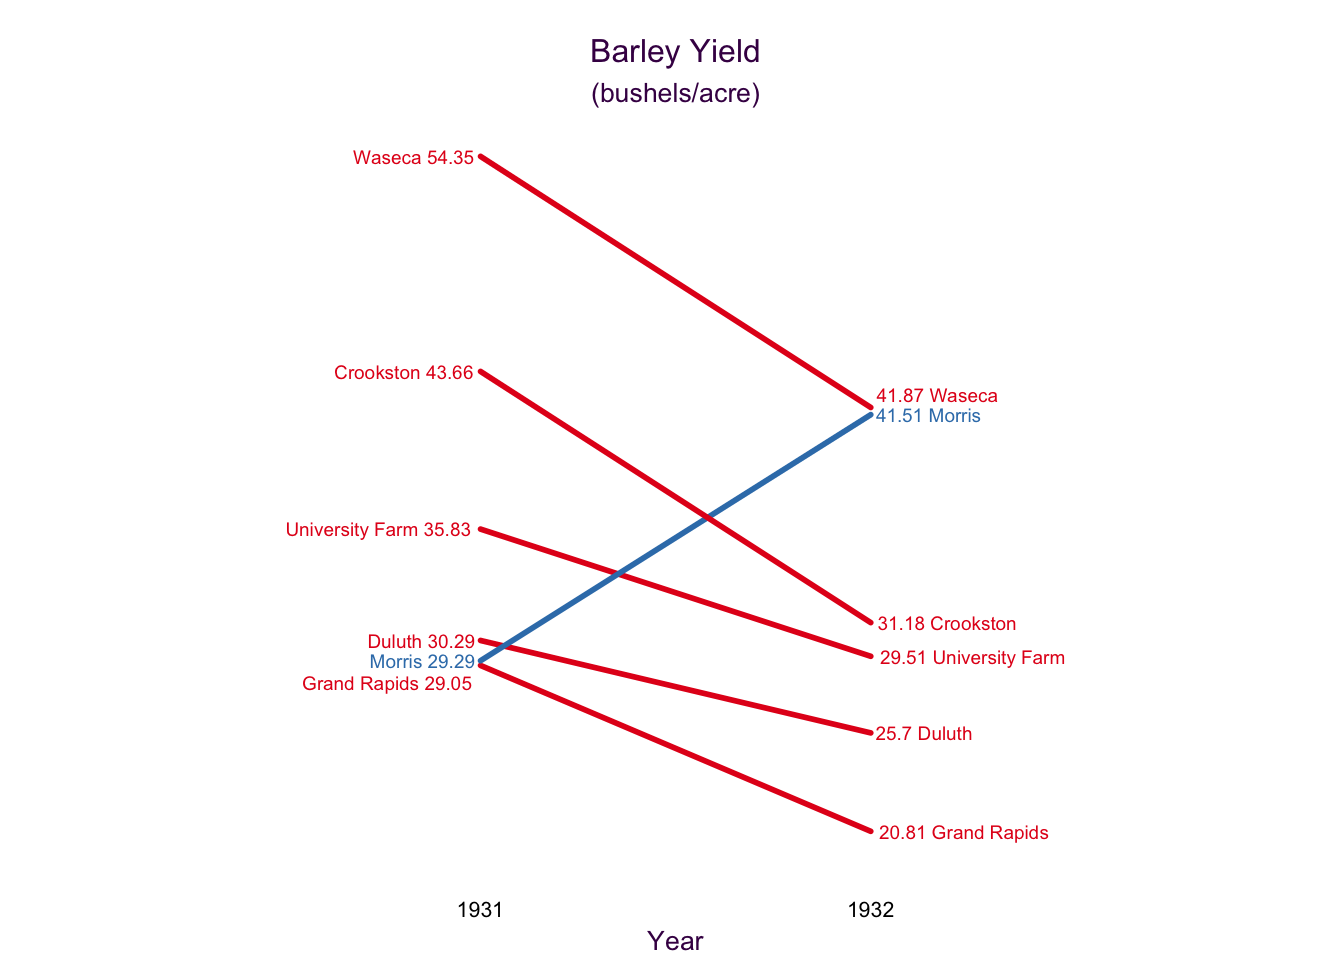 Cleveland Barley data set slope plot.